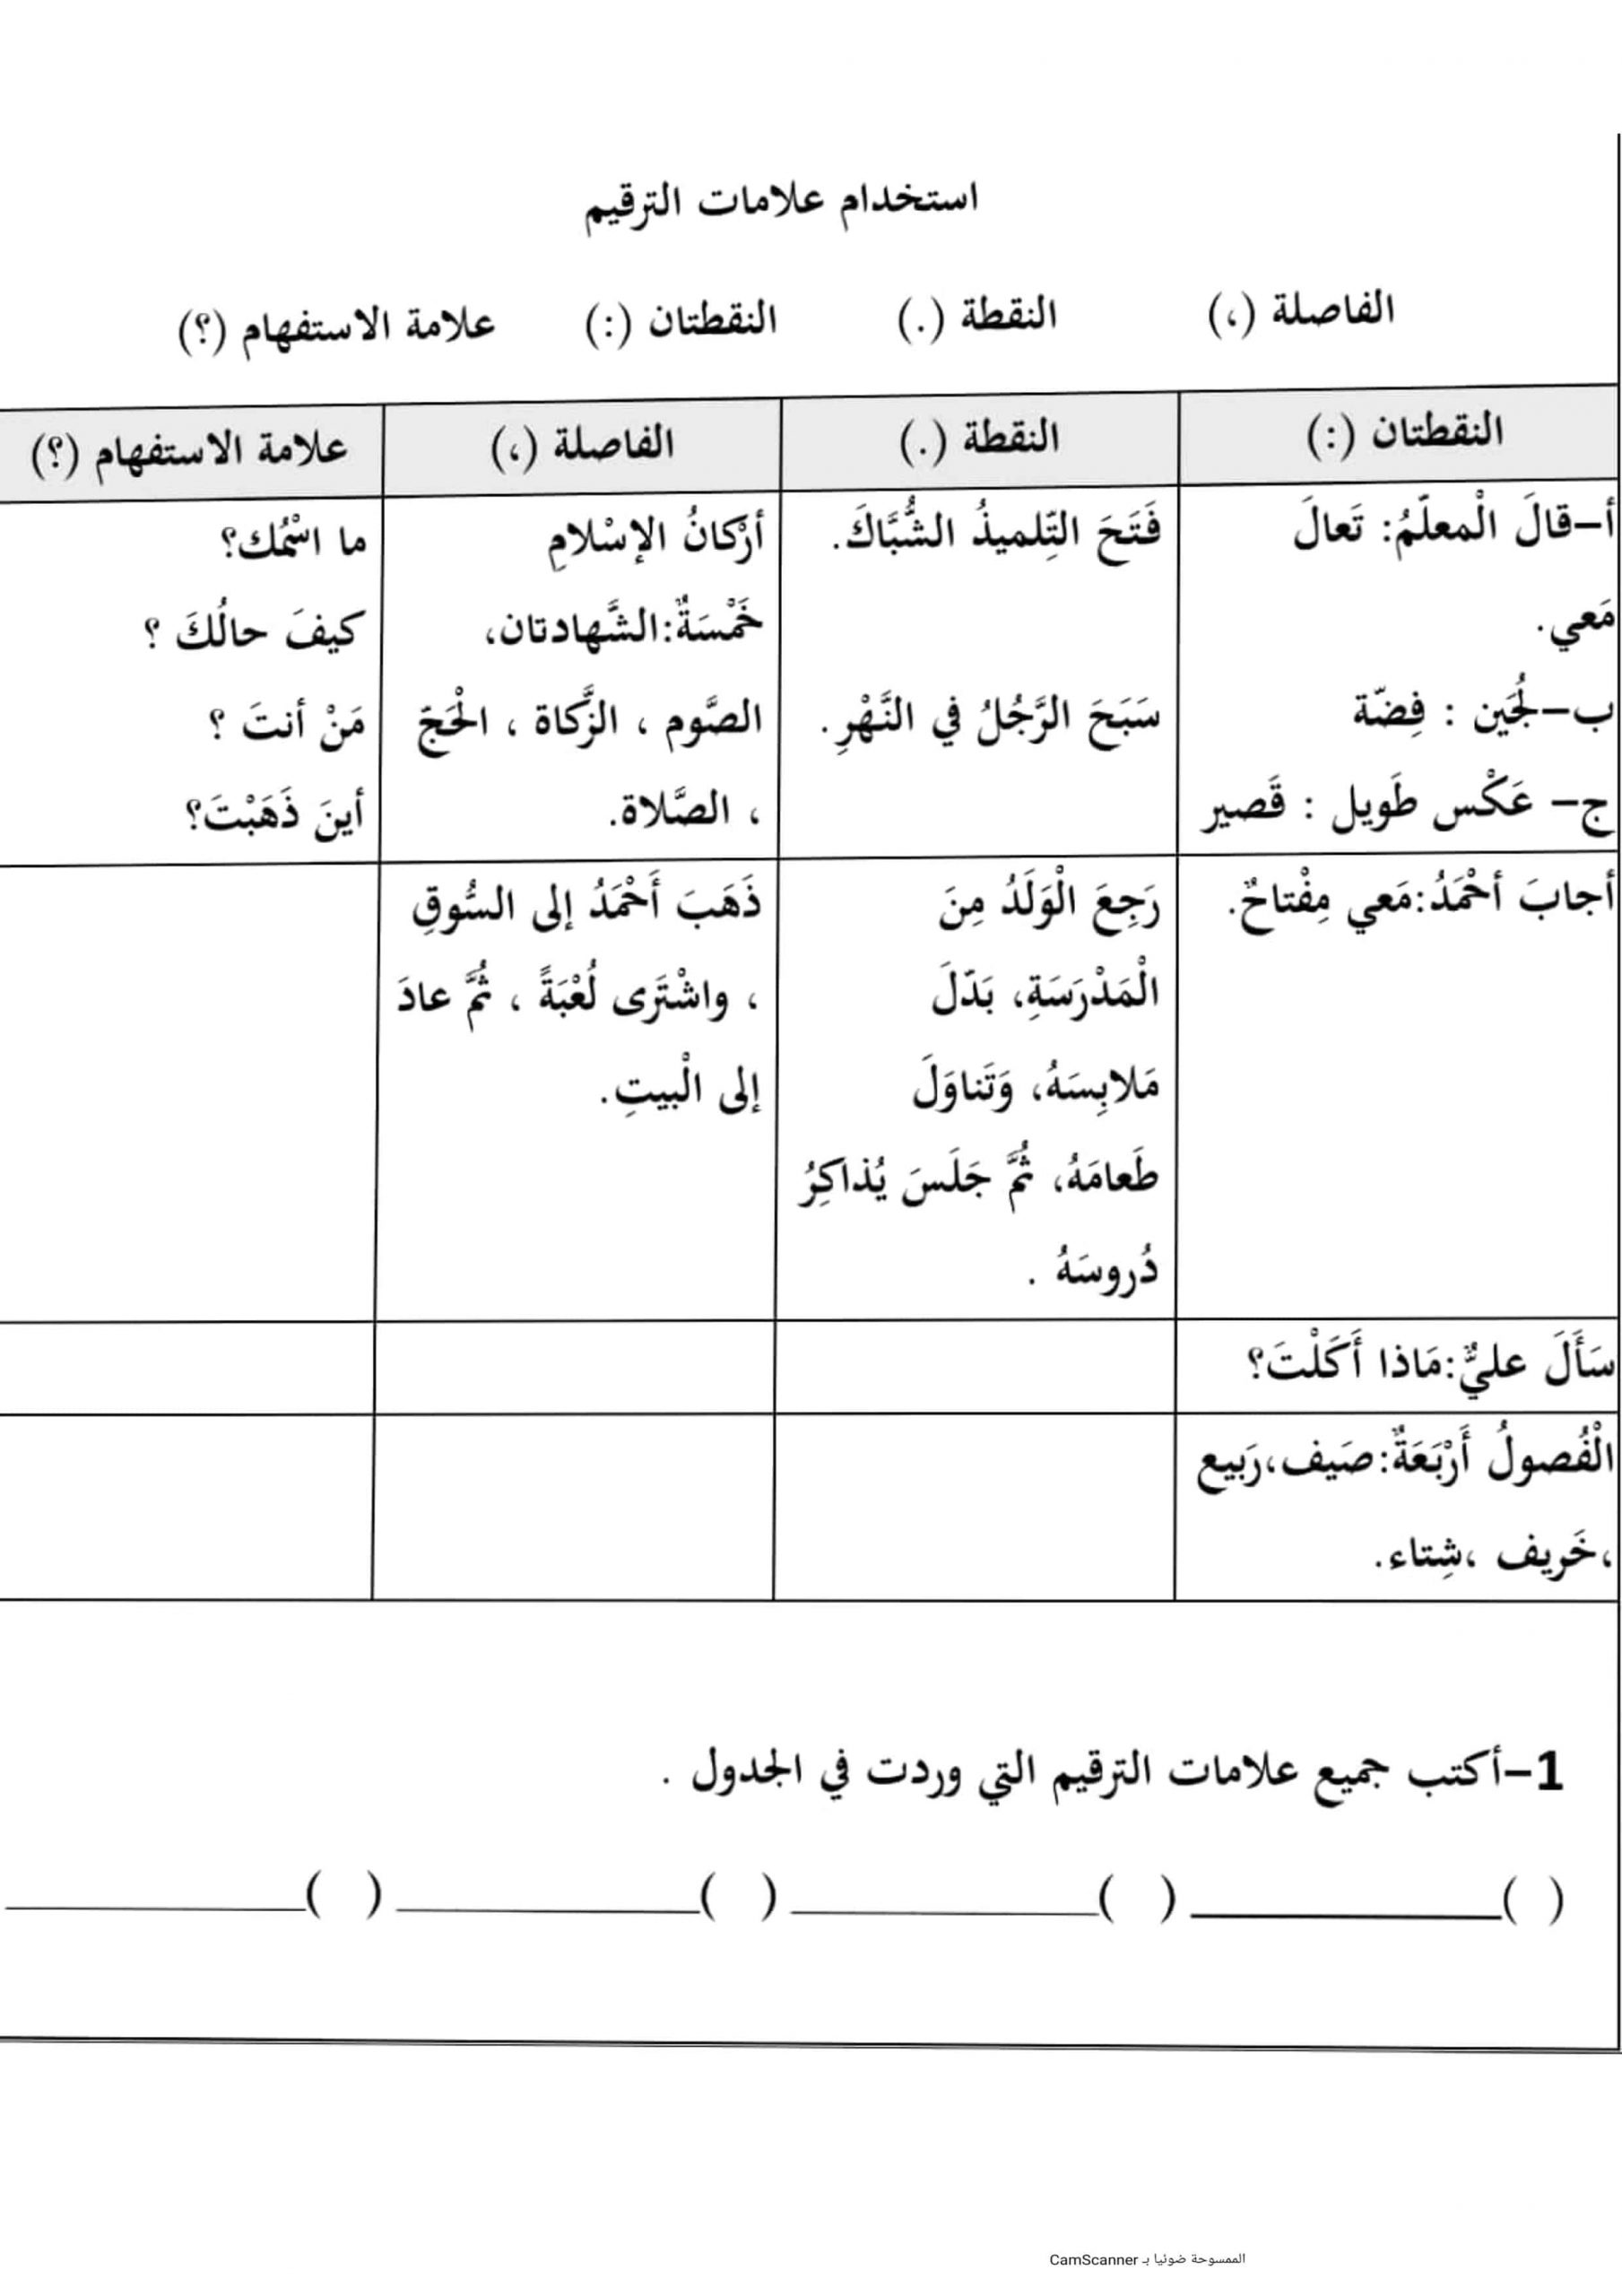 أوراق عمل تدريبات علامات الترقيم الصف الثالث مادة اللغة العربية 